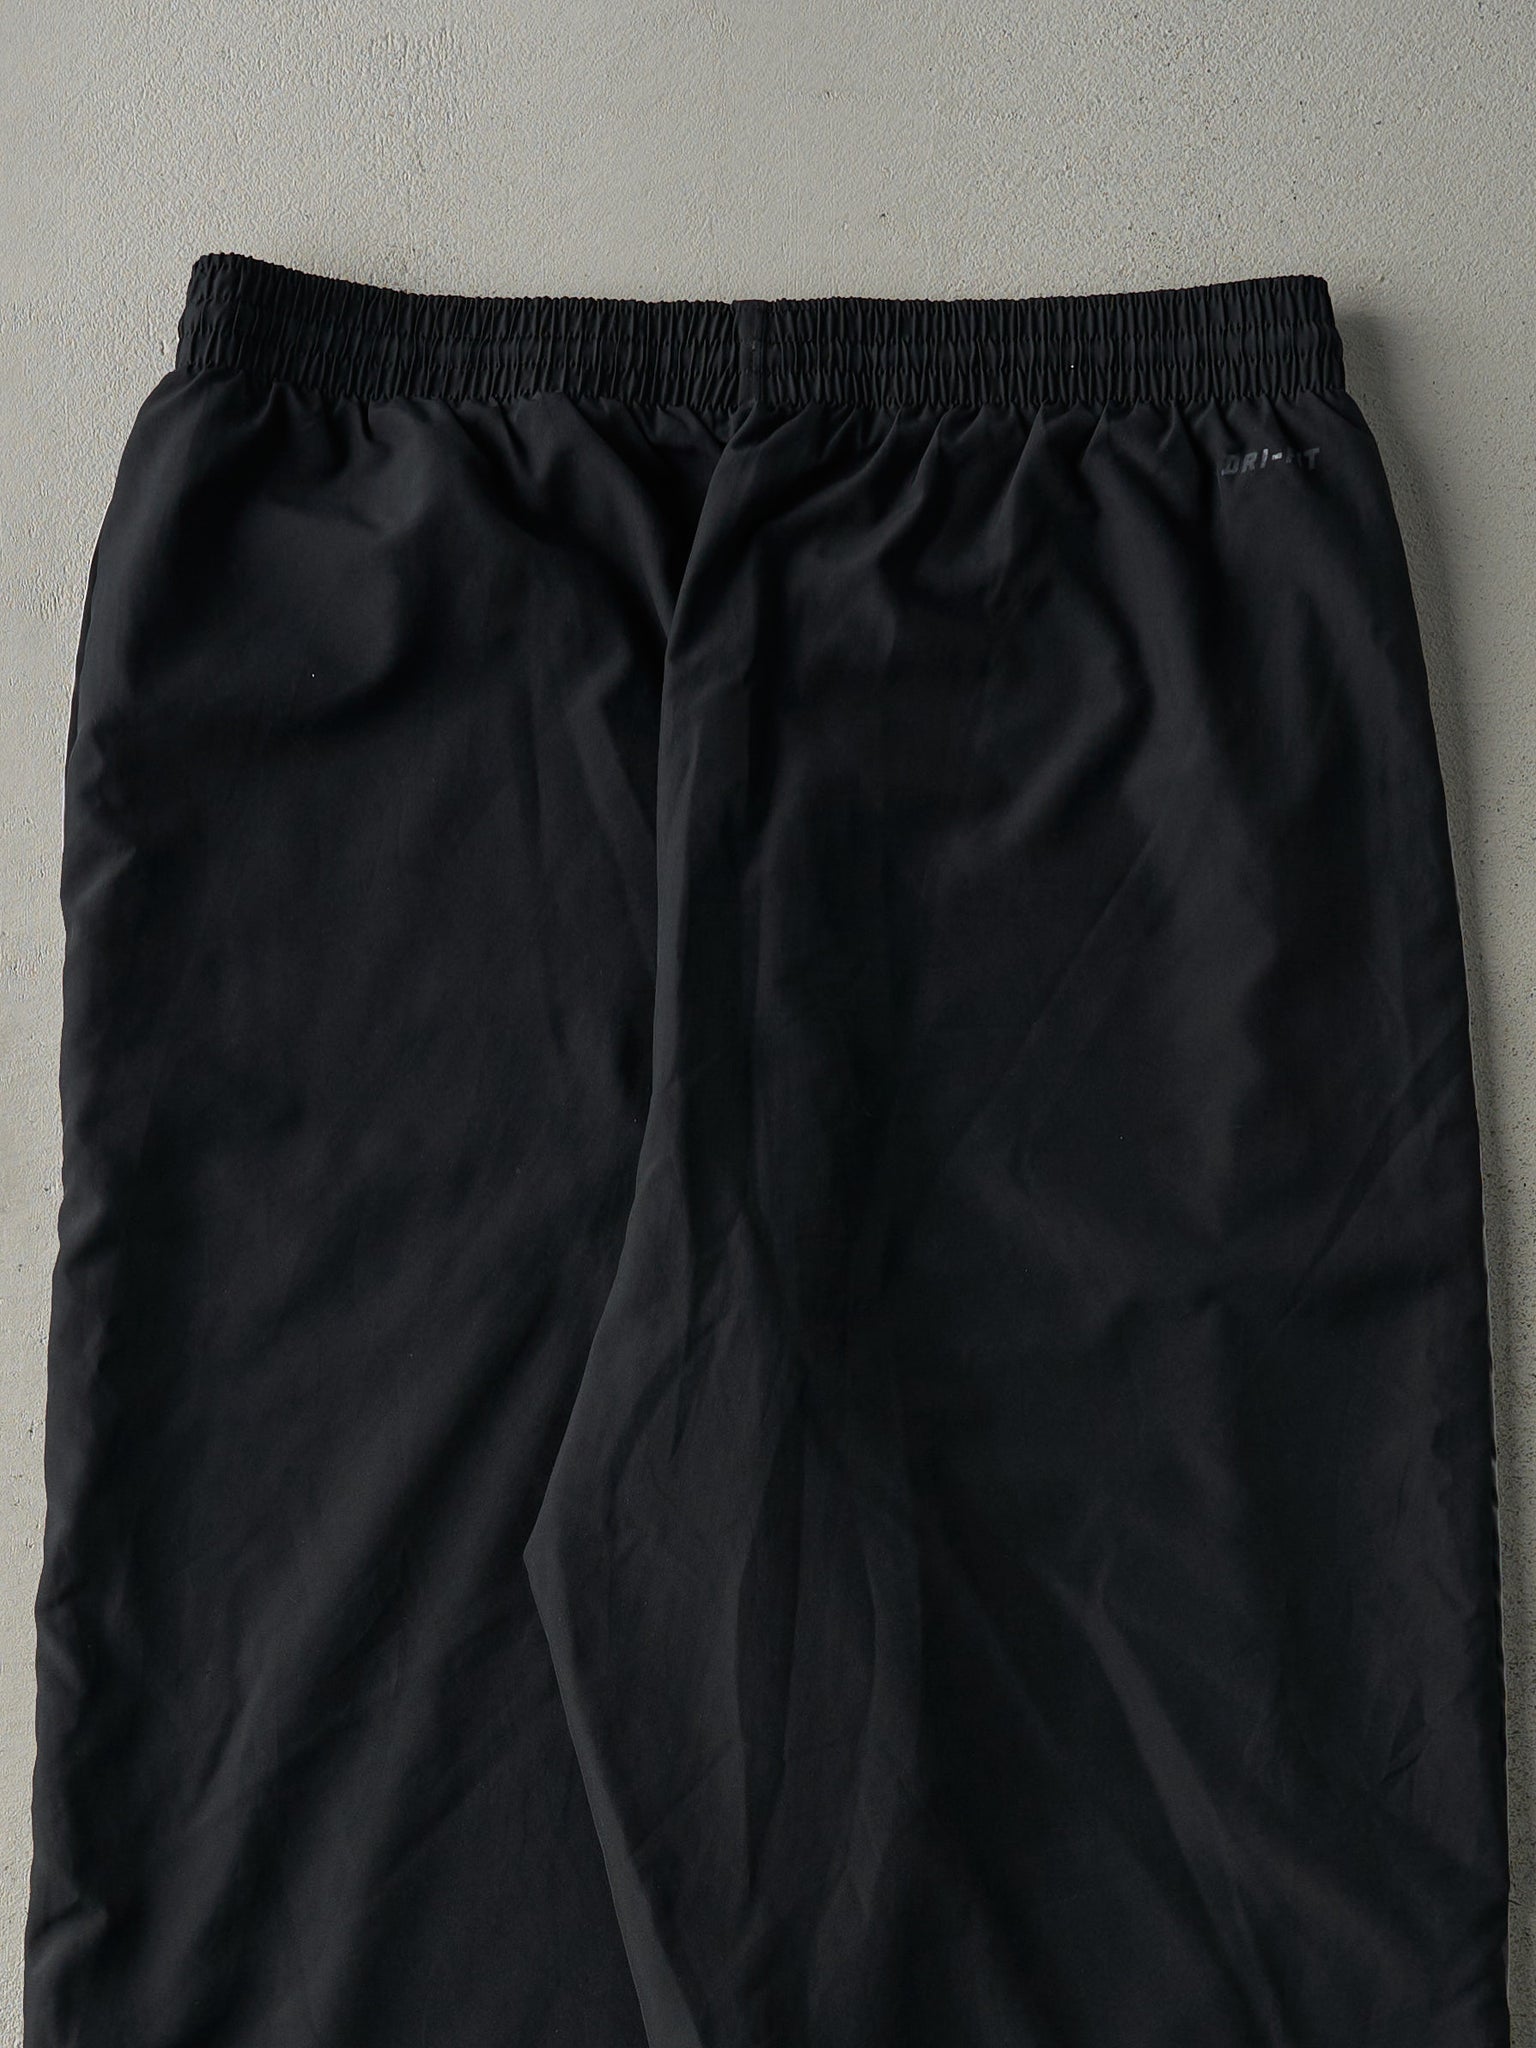 Vintage Y2K Black Nike Dri-Fit Track Pants (34x32)